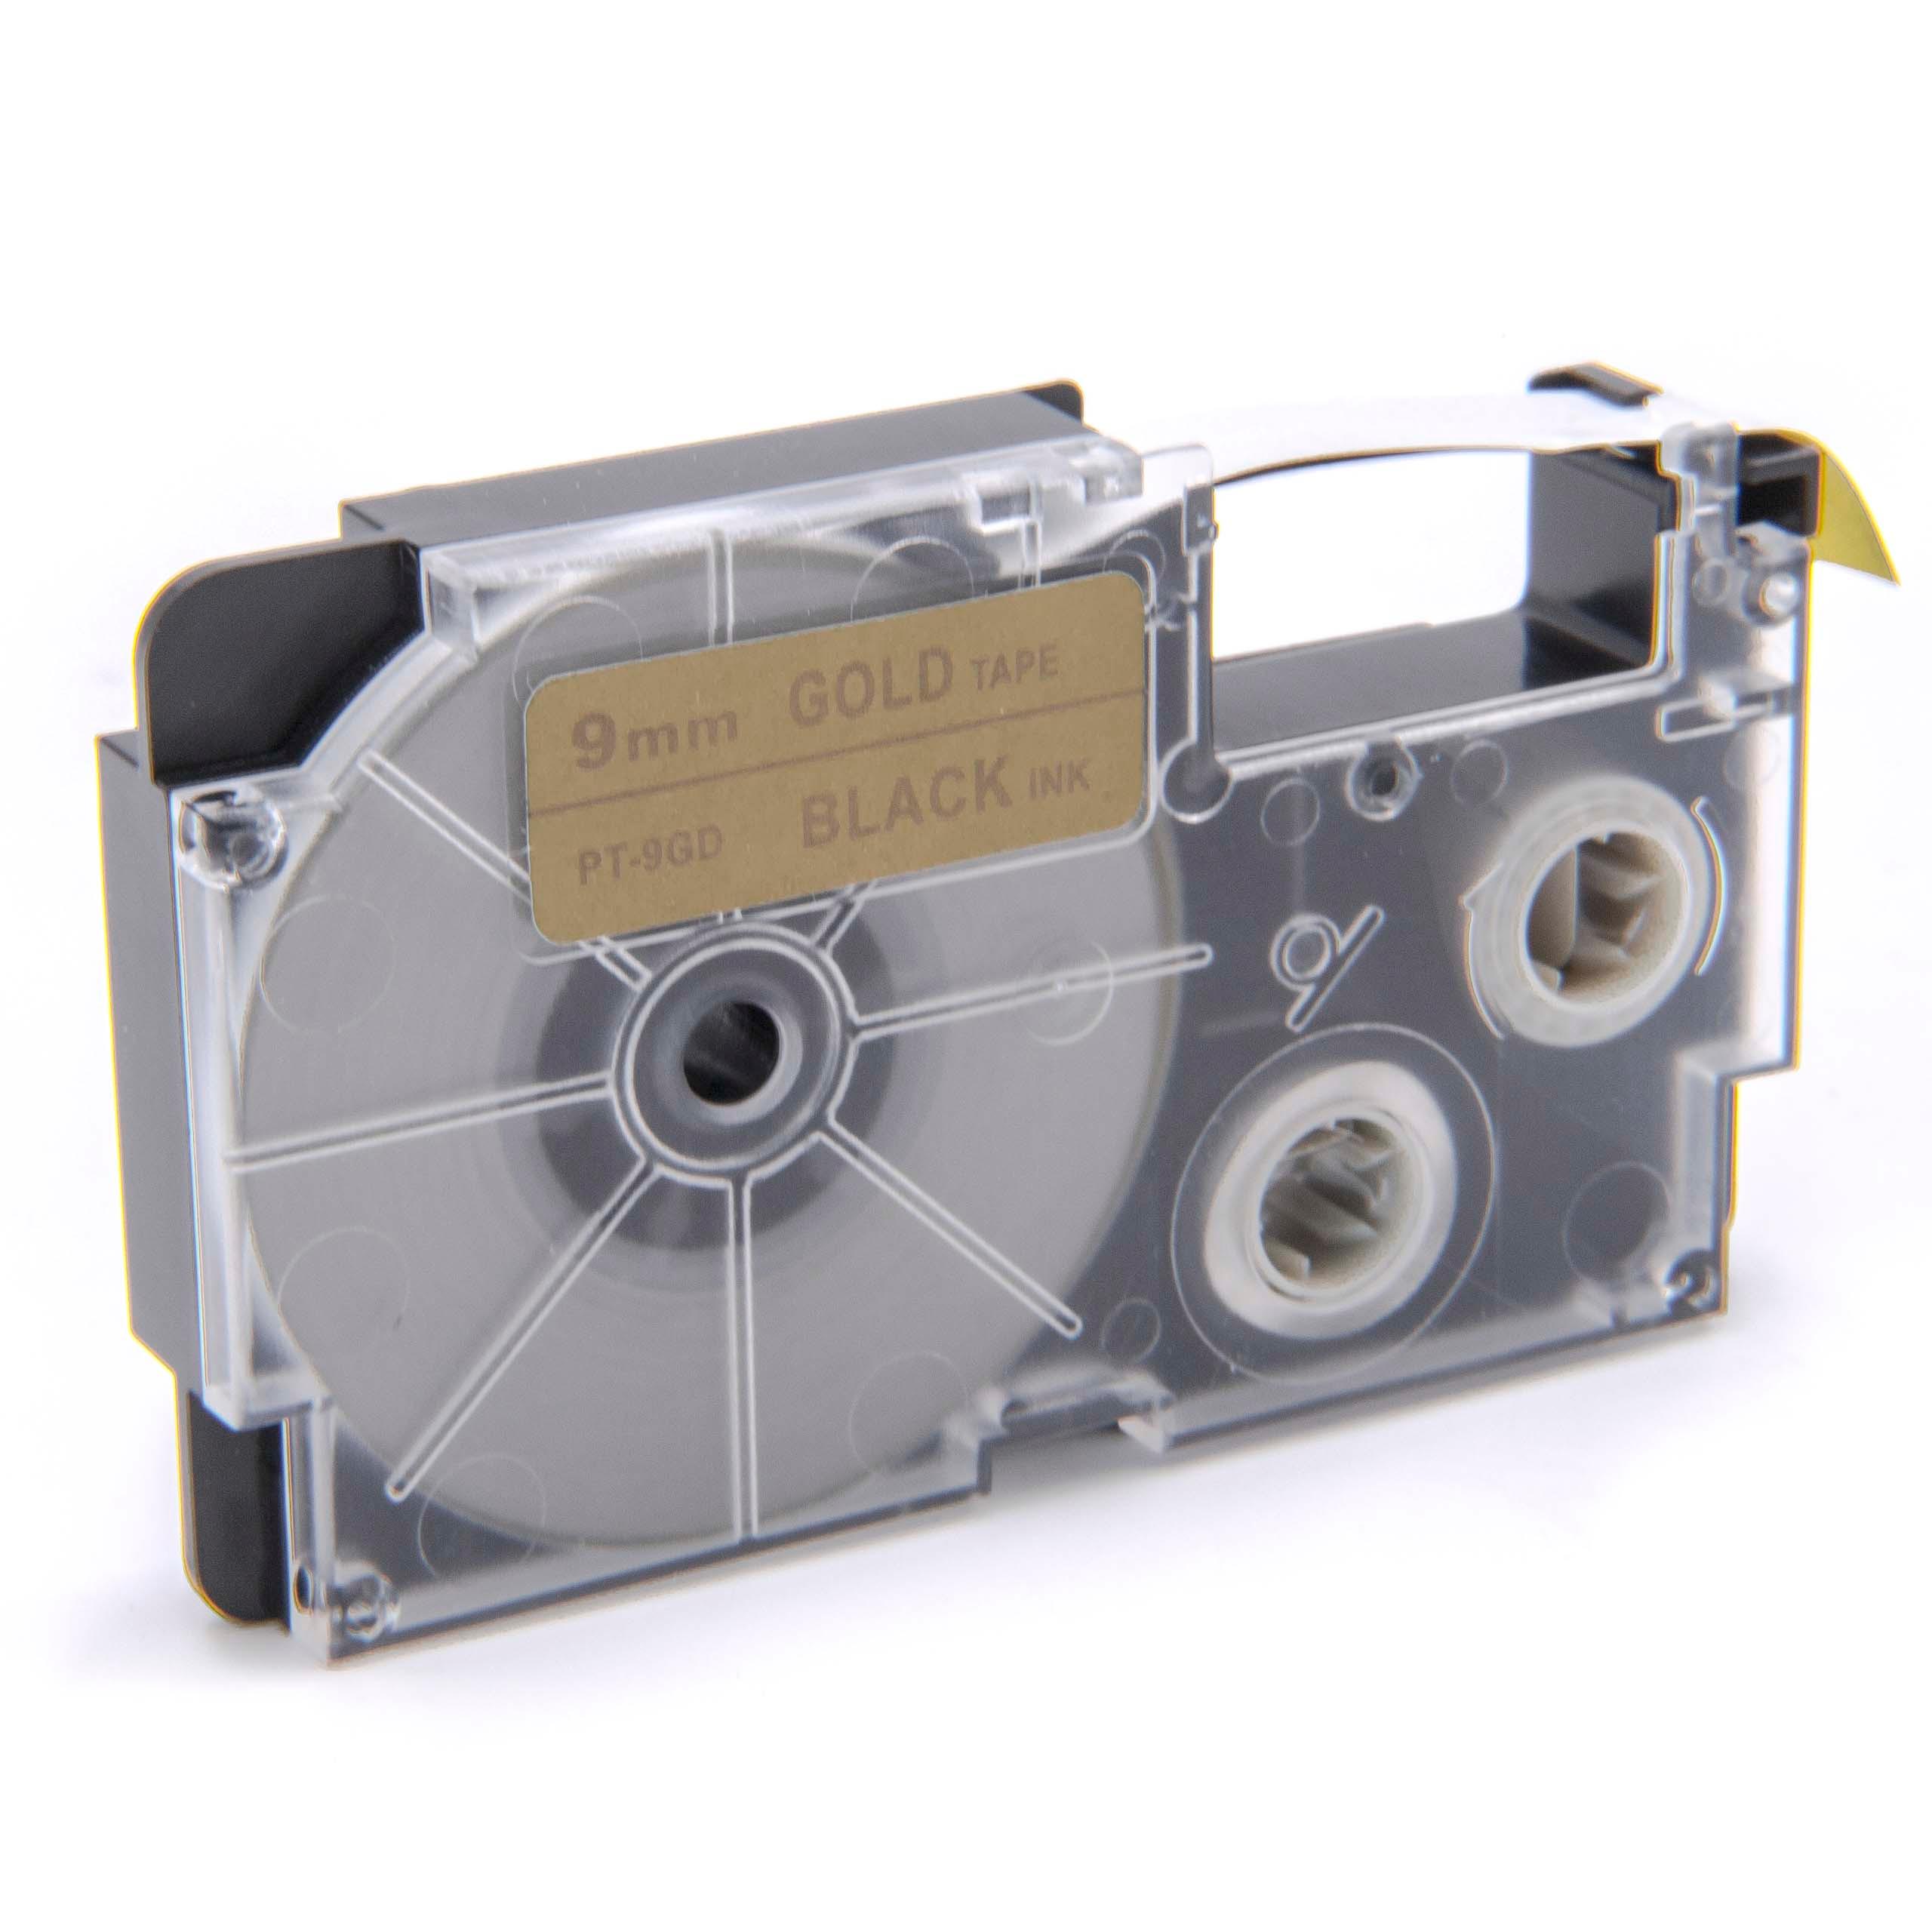 Cassette à ruban remplace Casio XR-9GD1 - 9mm lettrage Noir ruban Or